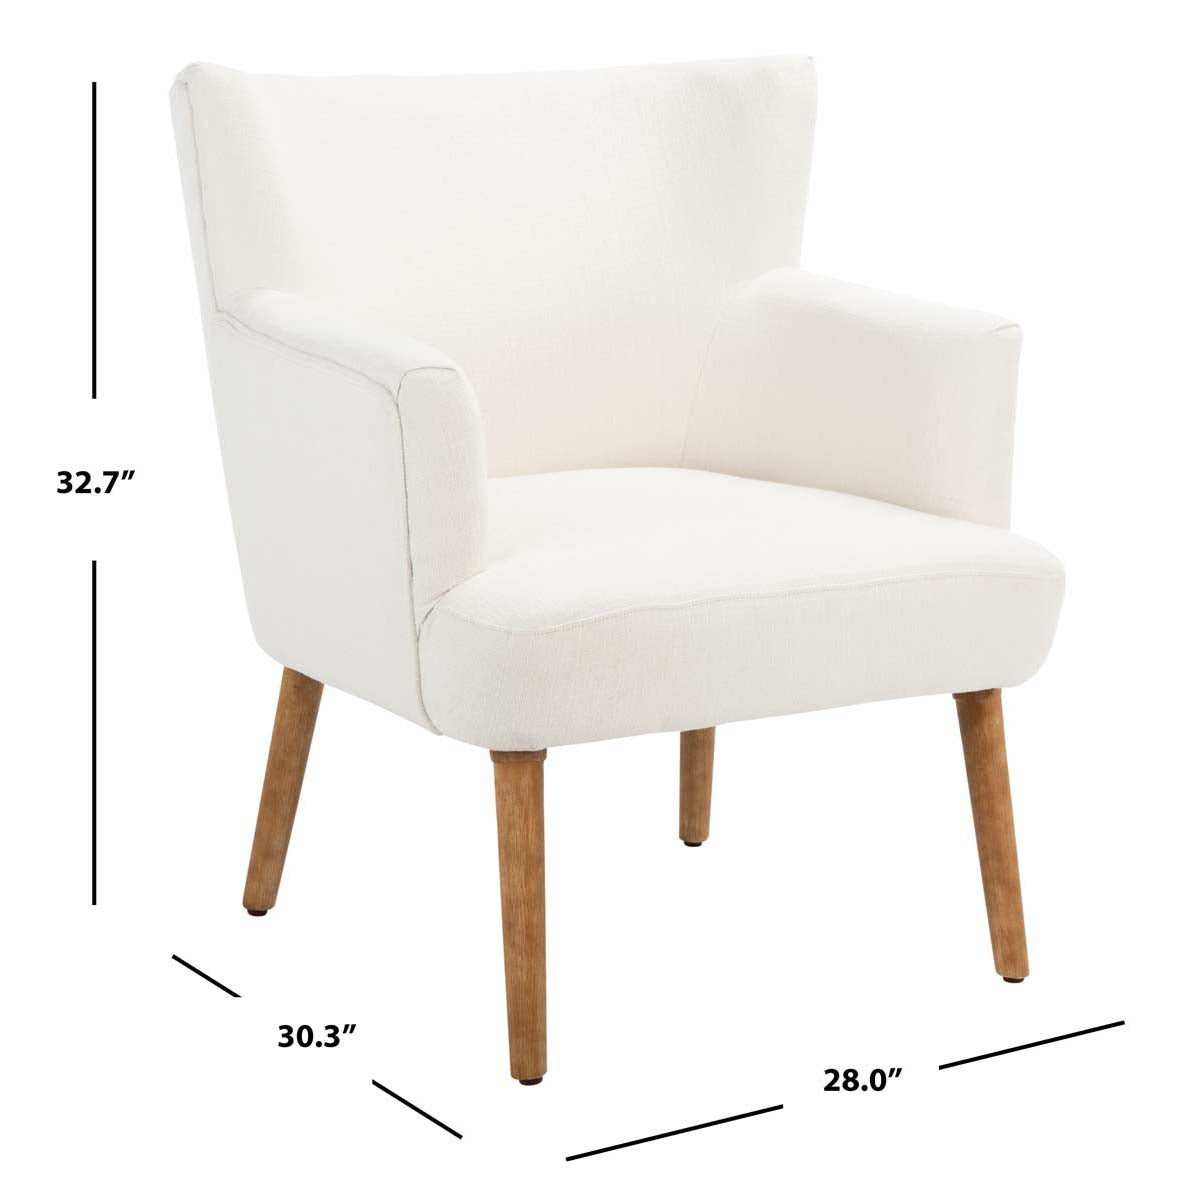 Safavieh Delfino Accent Chair , ACH4009 - White